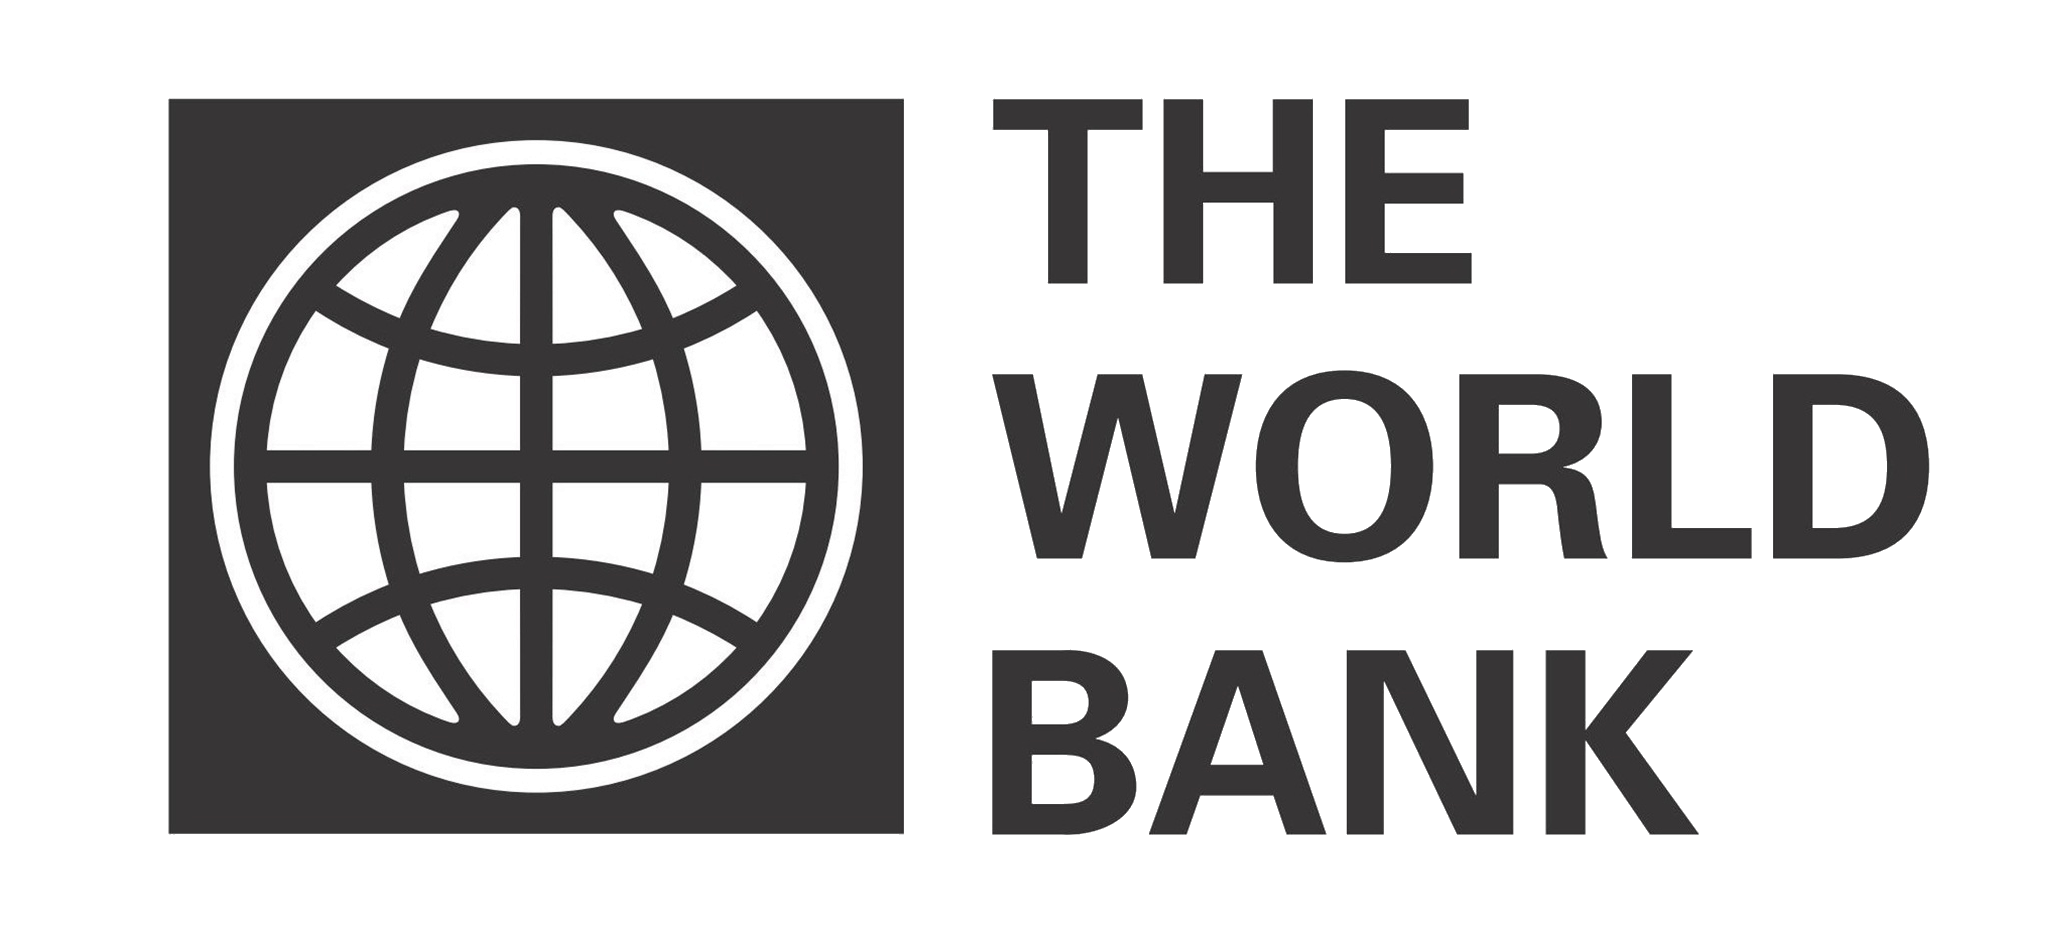 Всемирный банк деятельность. Группа Всемирного банка эмблема. Всемирного банка (the World Bank). Всемирный банк США. Всемирный банк картинки.